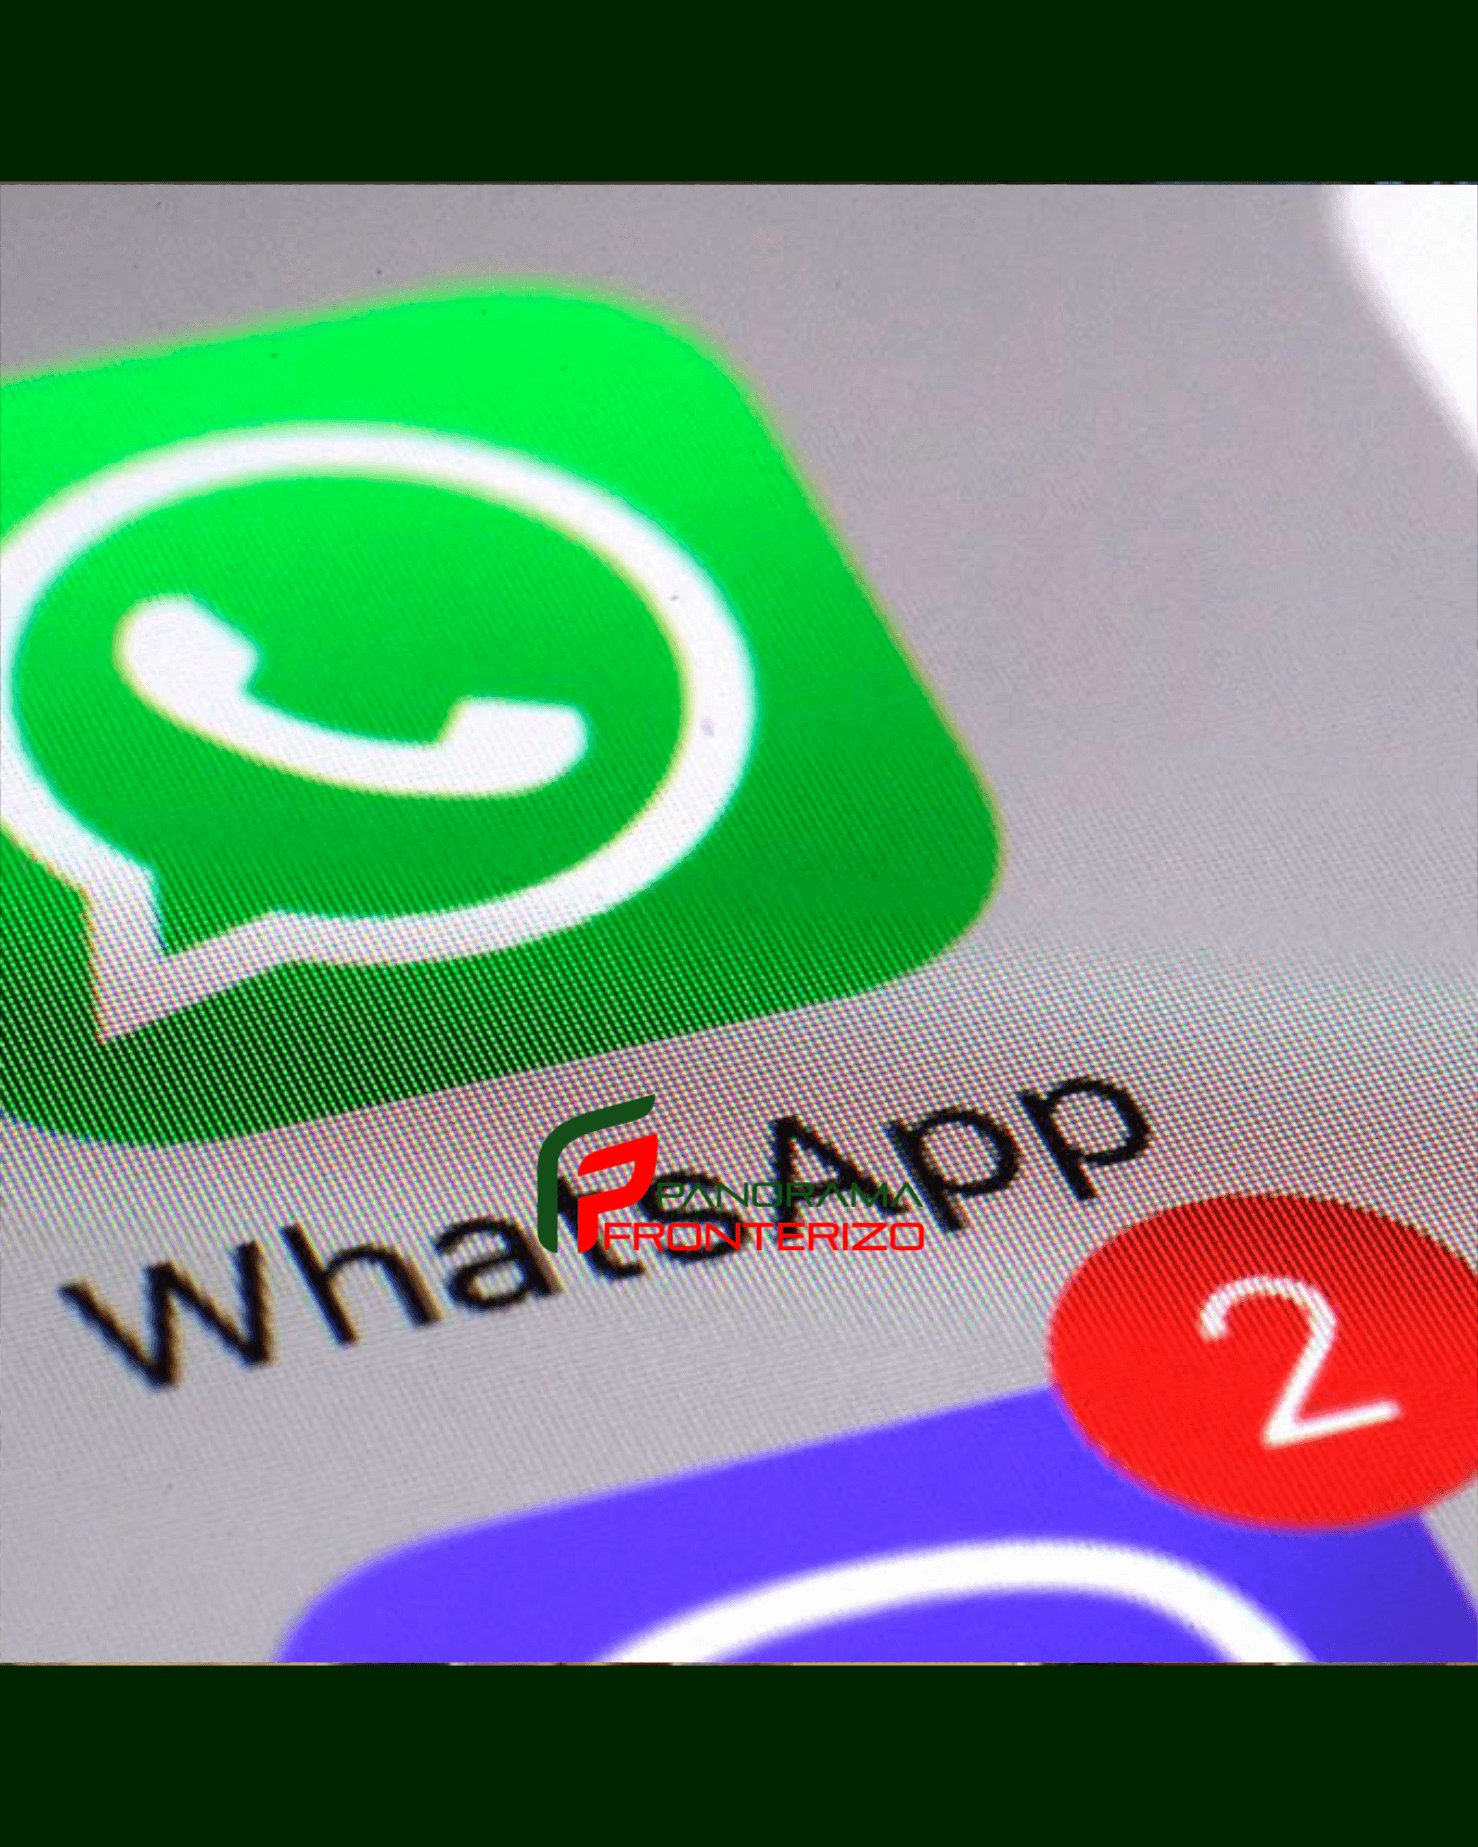 Whatsapp Se Actualiza Estas Son Las Tres Nuevas Funciones Que Pronto Tendrá La App Panorama 4951